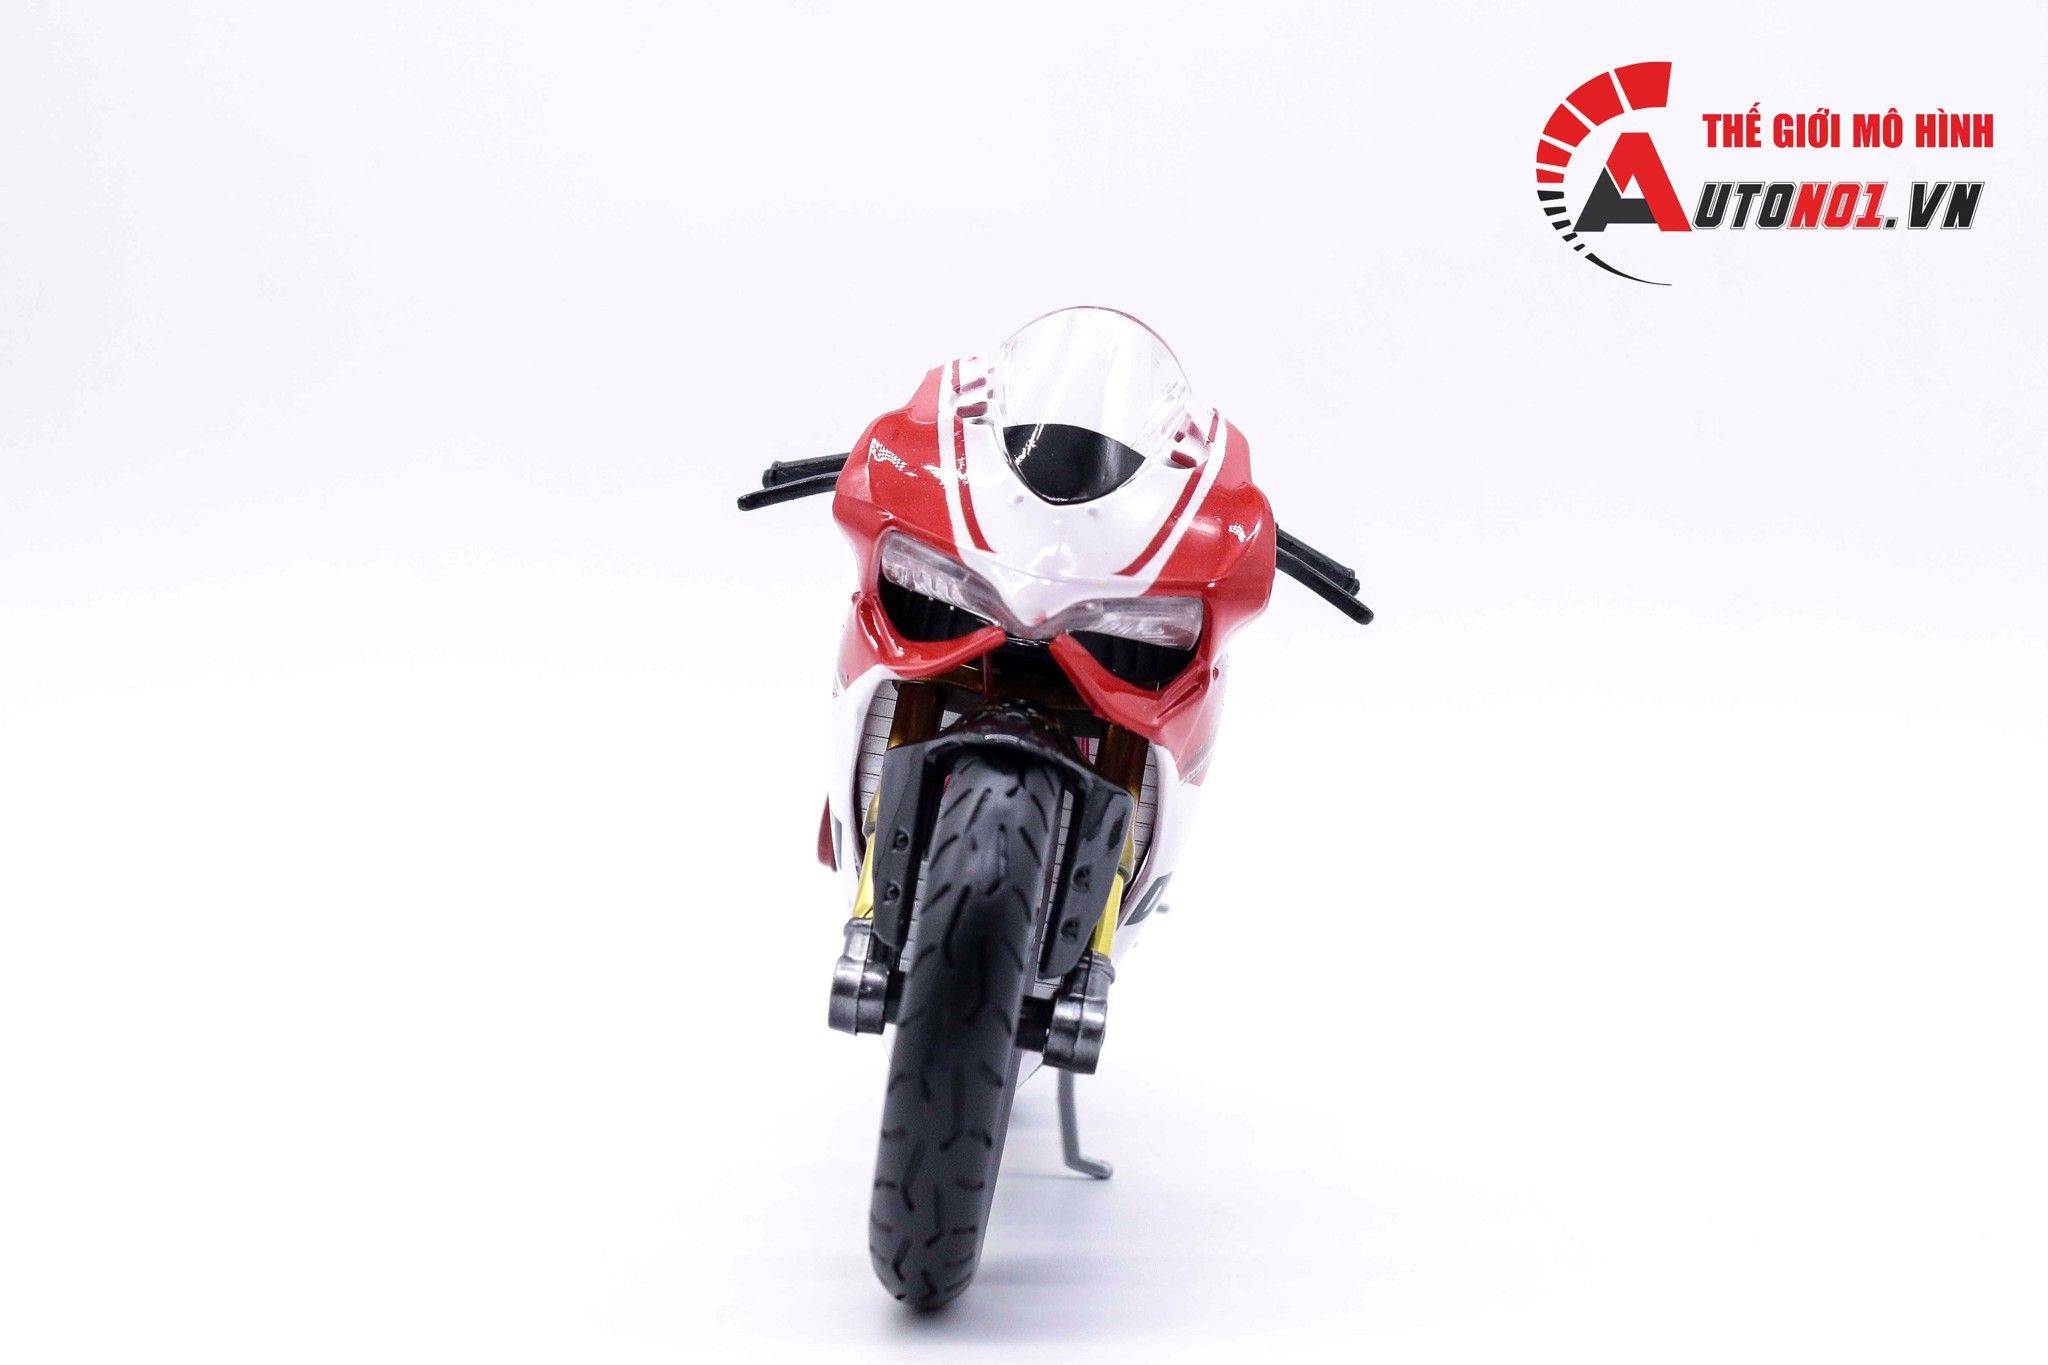  Mô hình siêu xe Ducati 1299 Panigale S Custom 50th Anniversary Red White V1 độ nồi 1:12 Autono1 D221D 